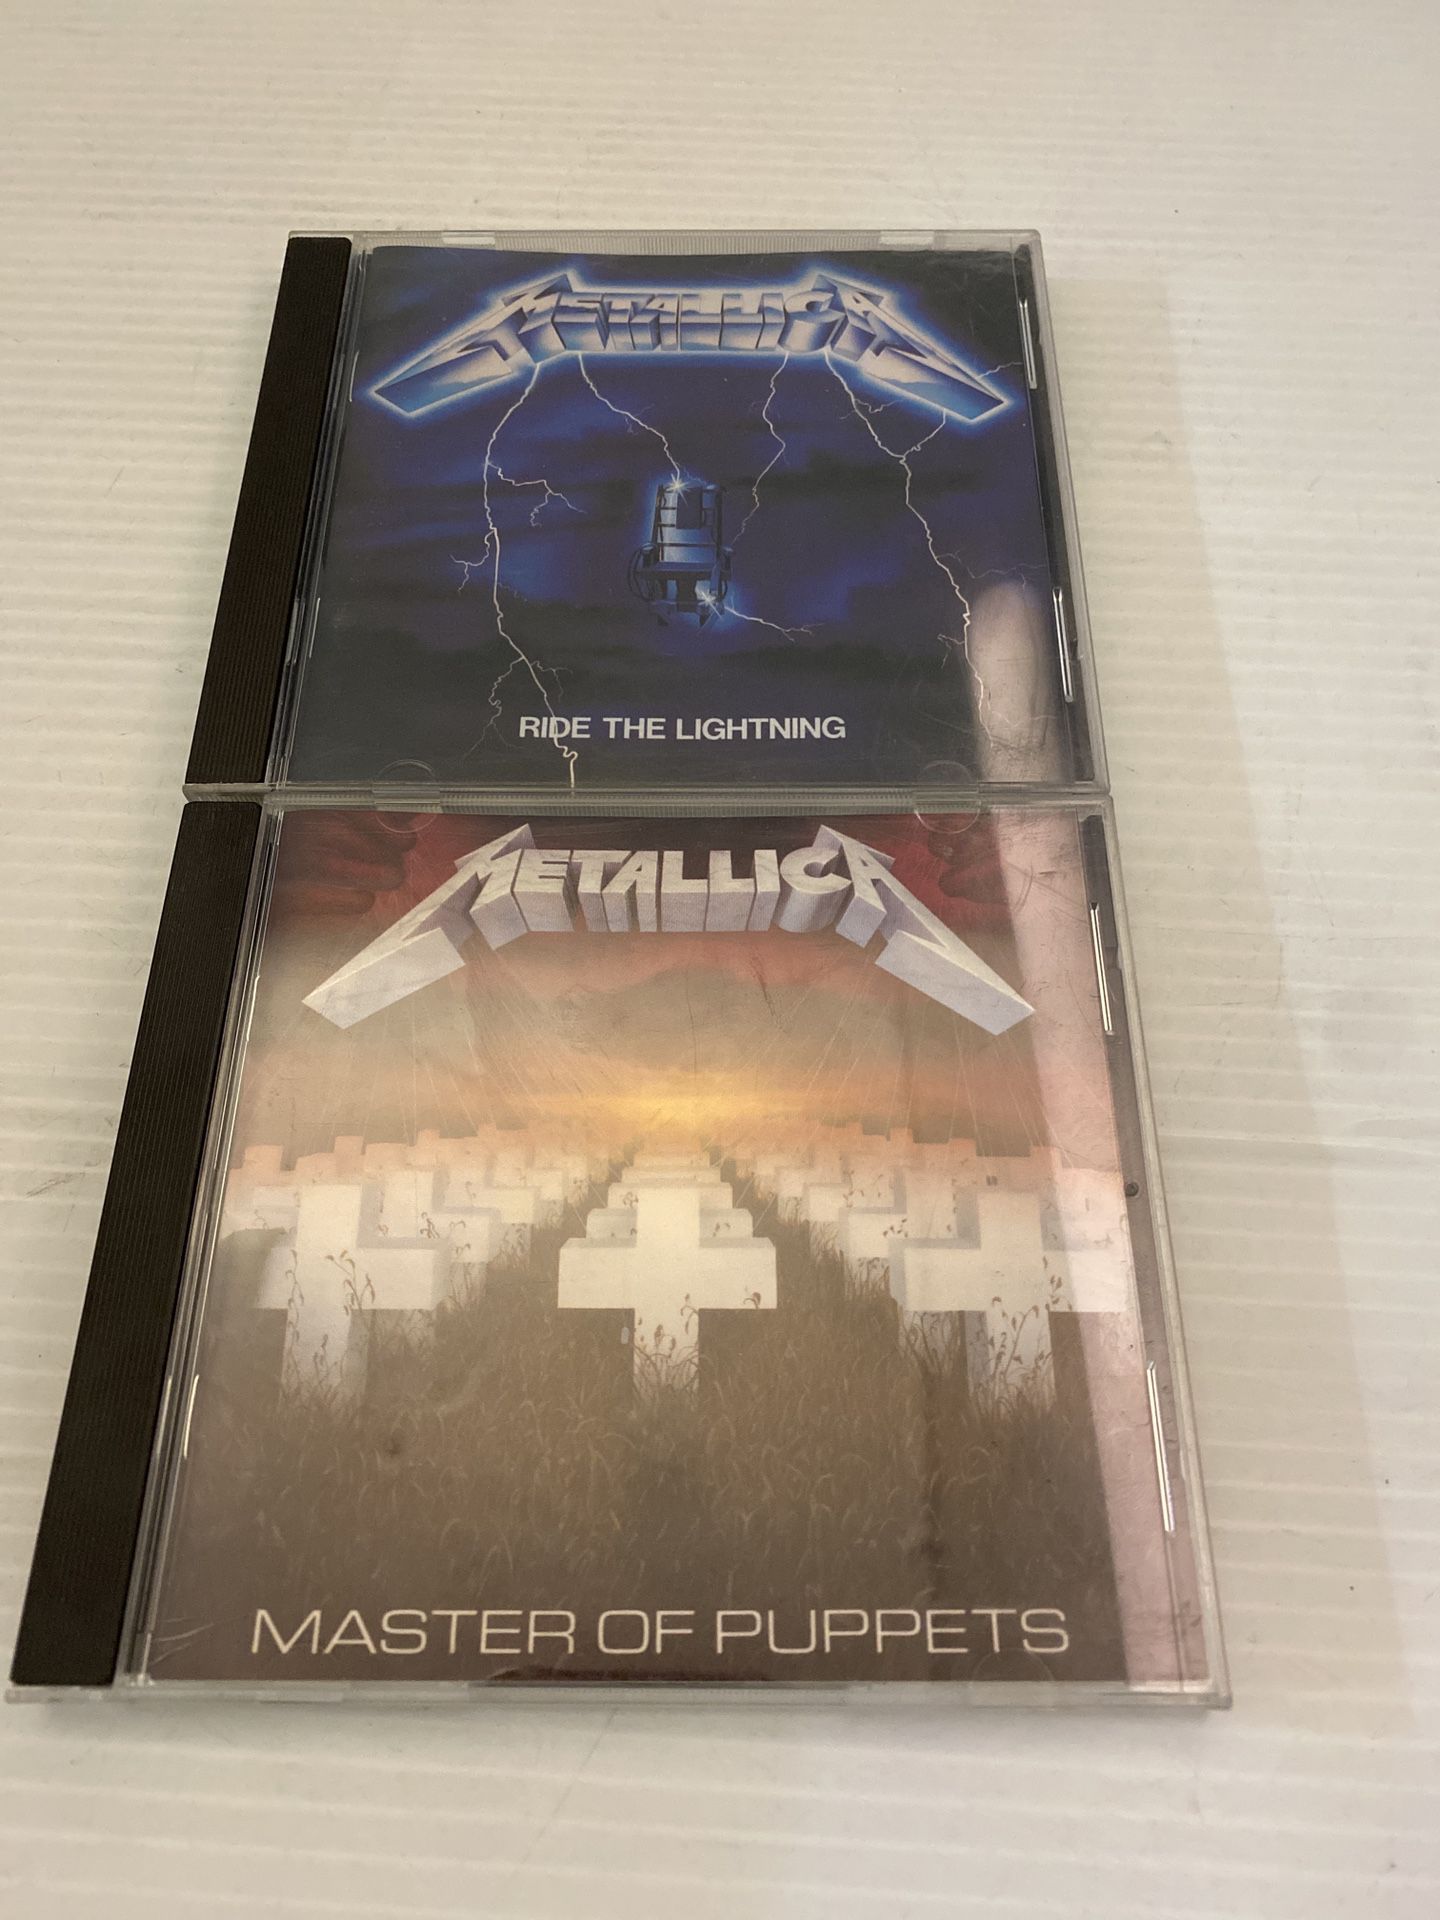 Metallica - Master of Puppets (CD, 1986 Elektra) & Ride The Lightning (CD 1984)